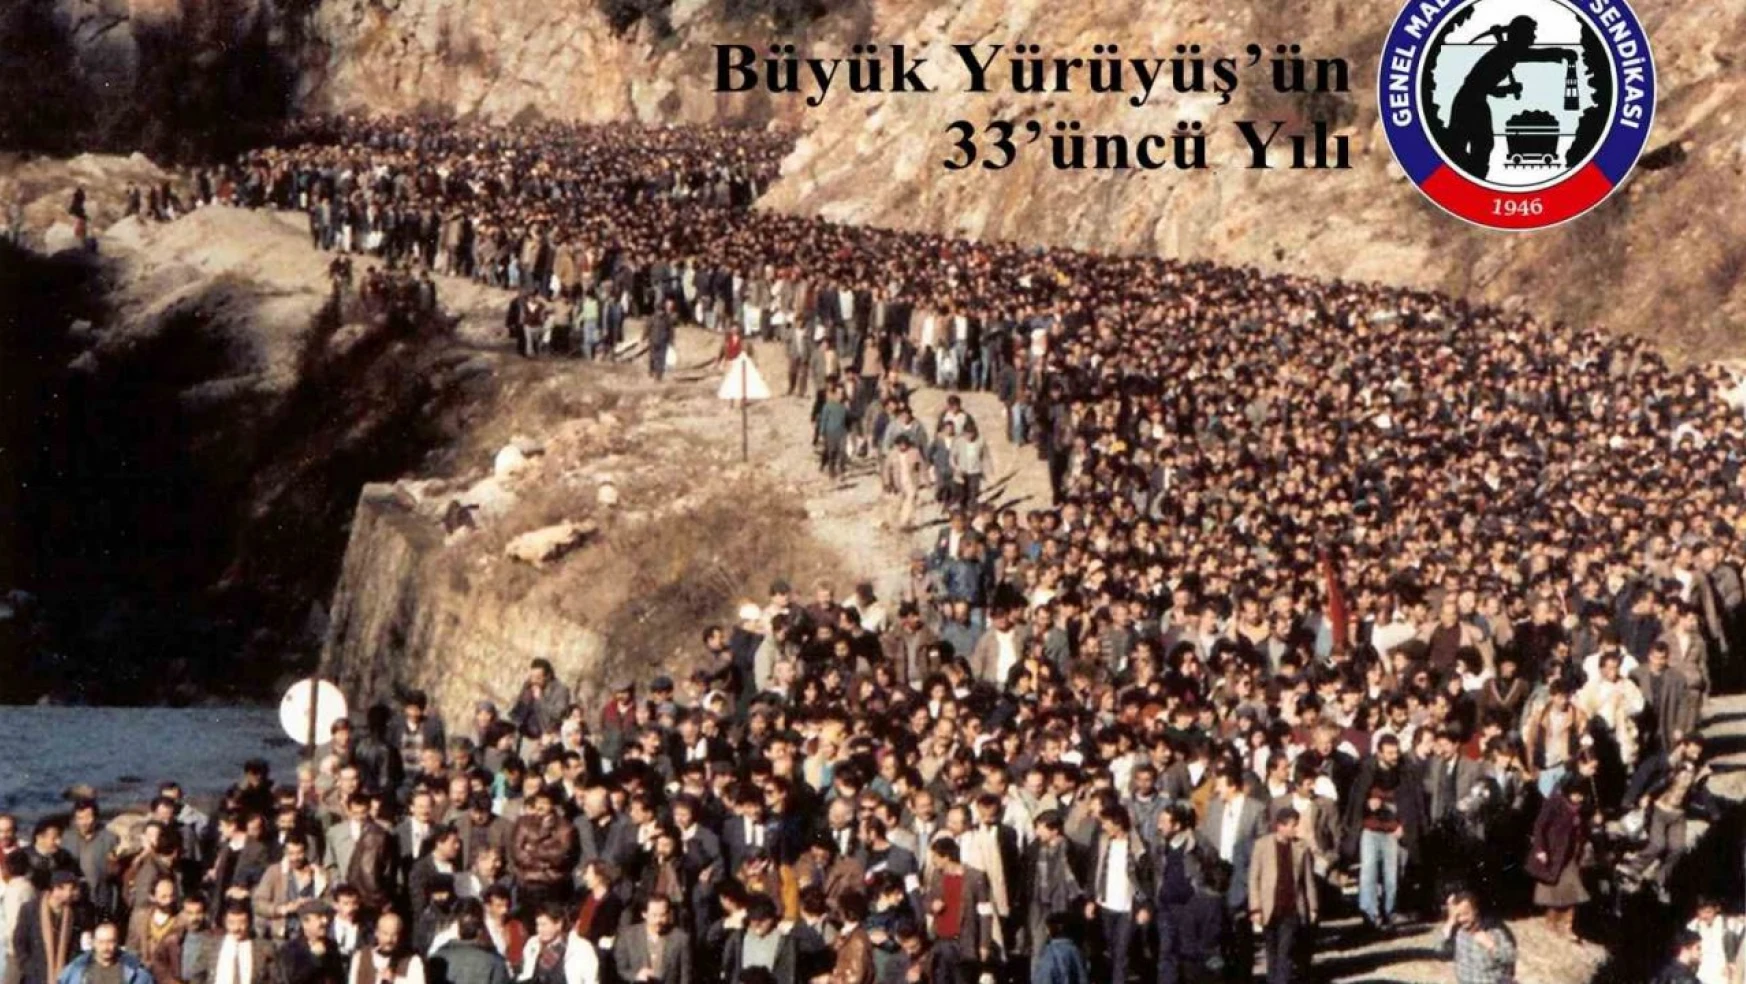 4-8 Ocak Ankara Yürüyüşünün 33. Yıldönümü